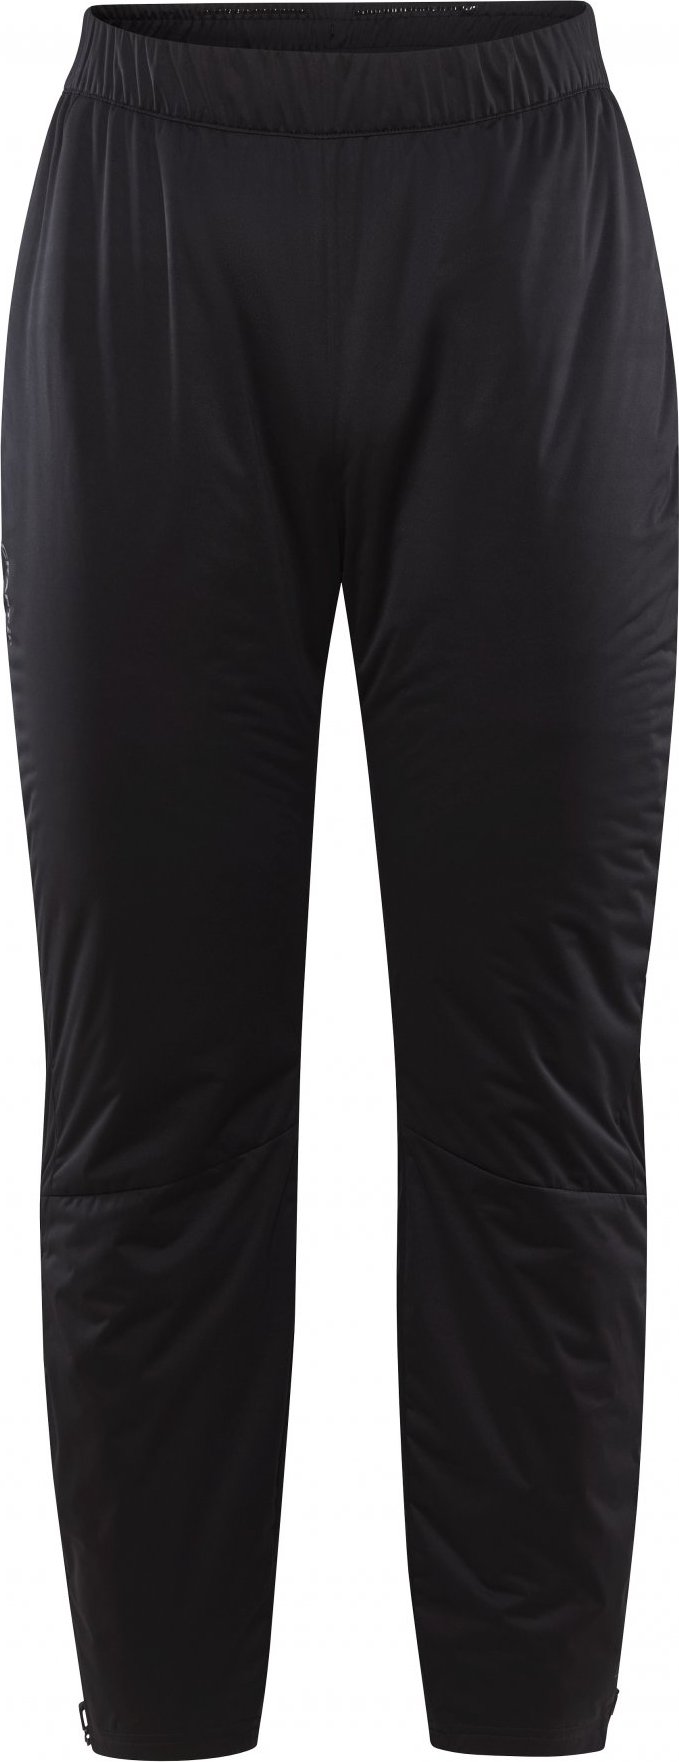 Dámské zateplené kalhoty CRAFT Core Nordic Training Warm černé Velikost: XS